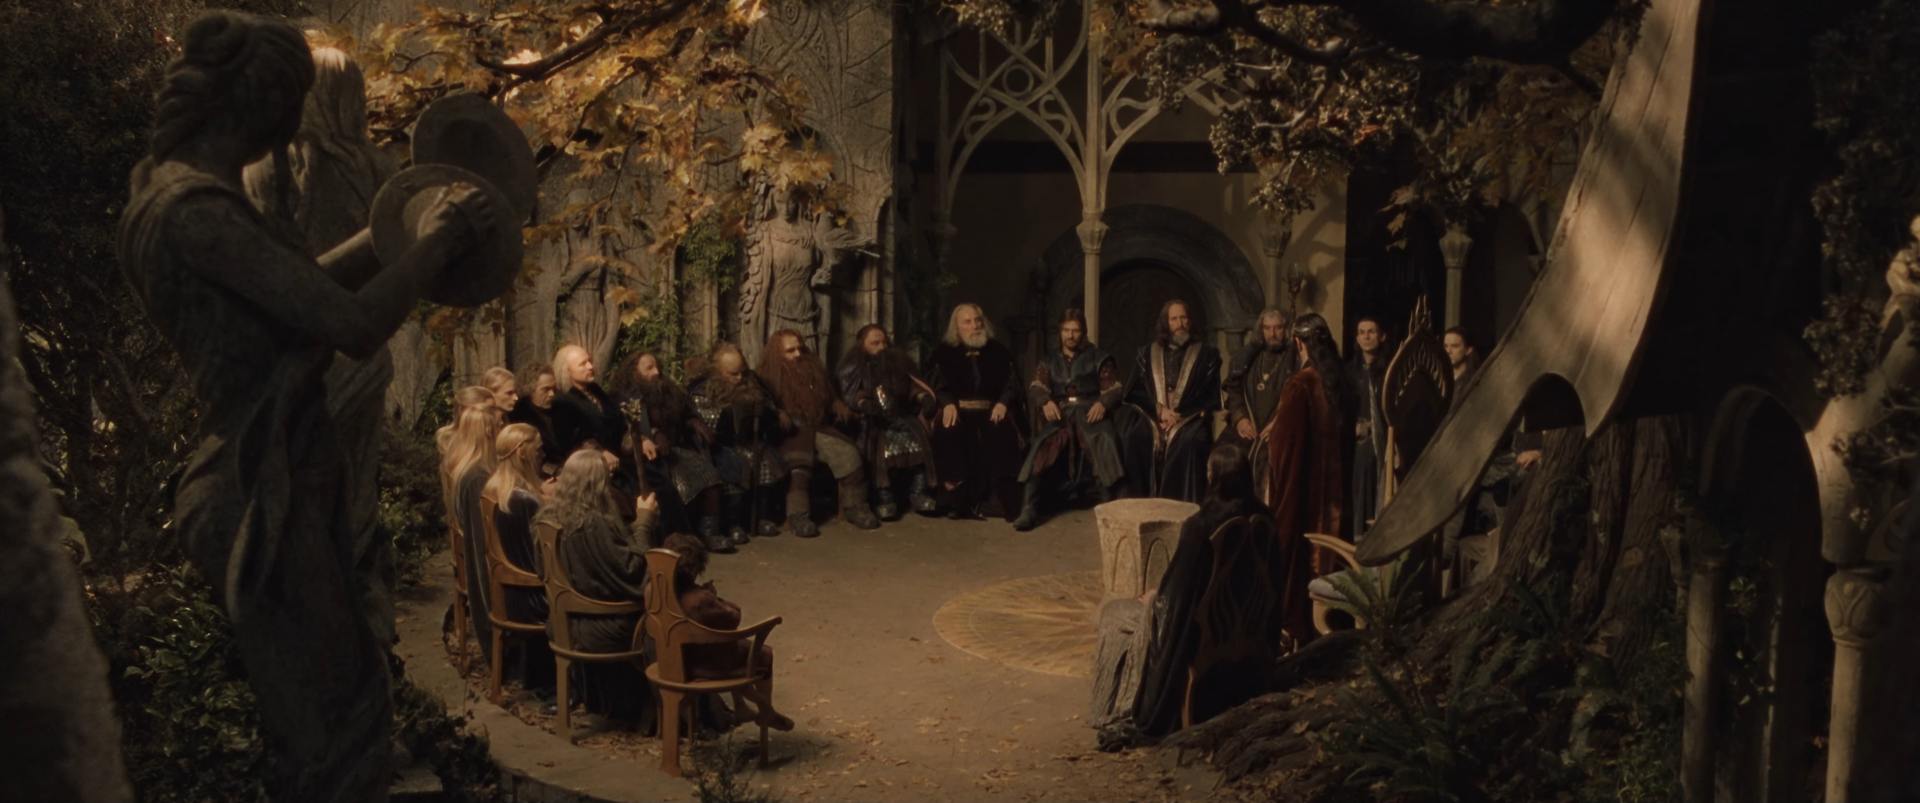 Council_of_Elrond_-_FOTR-1